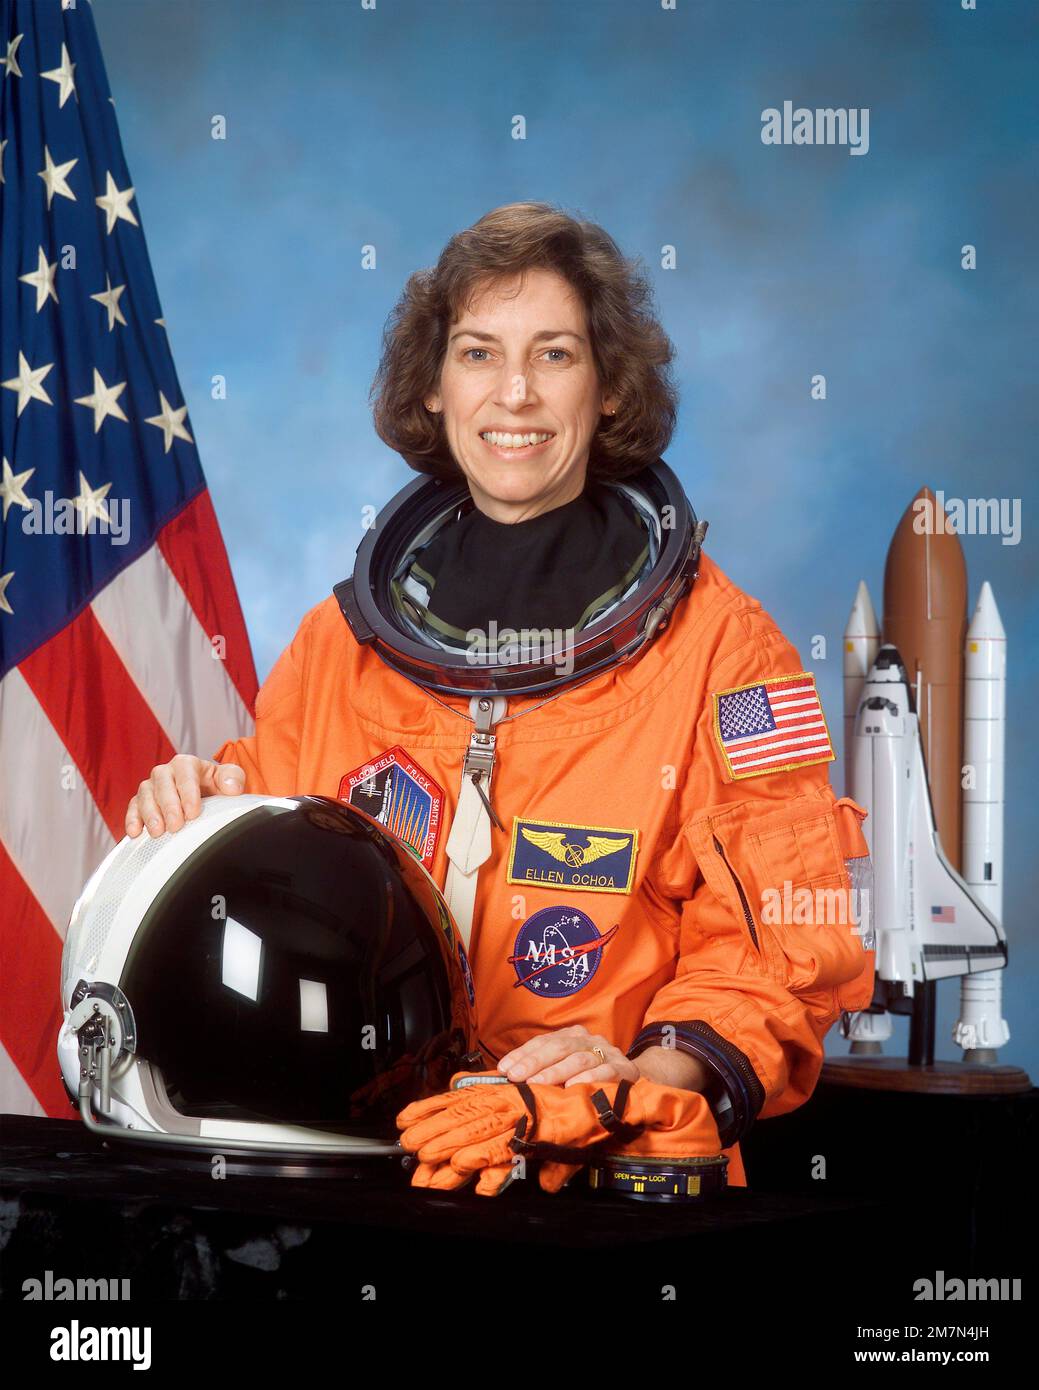 Ellen Ochoa. Porträt des ehemaligen Astronauten und Leiters des Johnson Space Center, Ellen Ochoa (geb. 1958), 2002. Foto mit freundlicher Genehmigung der NASA Stockfoto